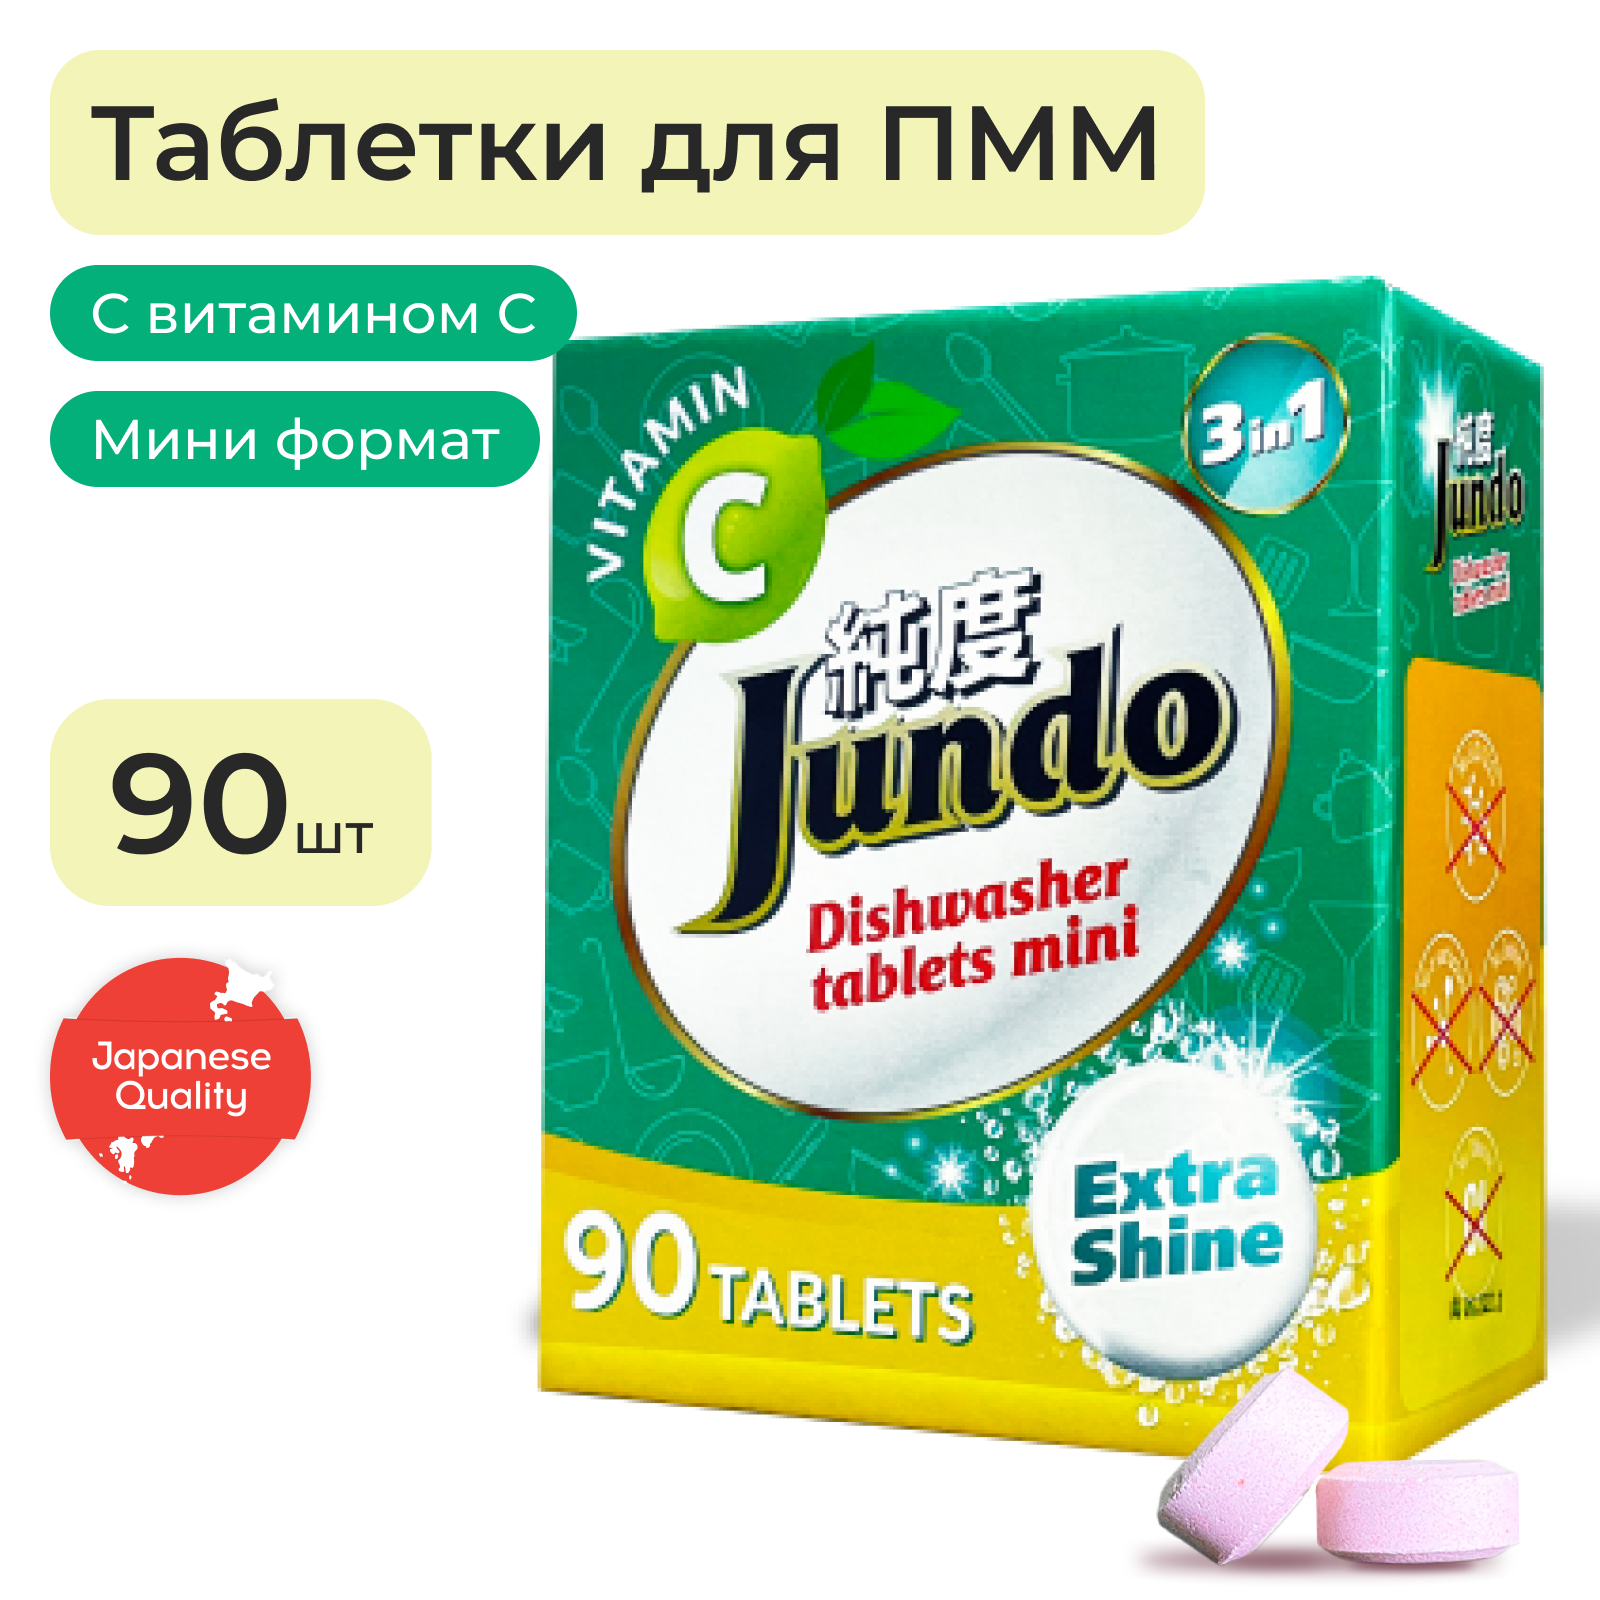 Таблетки для посудомоечной машины Jundo мини с Витамином С и активным кислородом 90 штук – купить в Москве, цены в интернет-магазинах на Мегамаркет